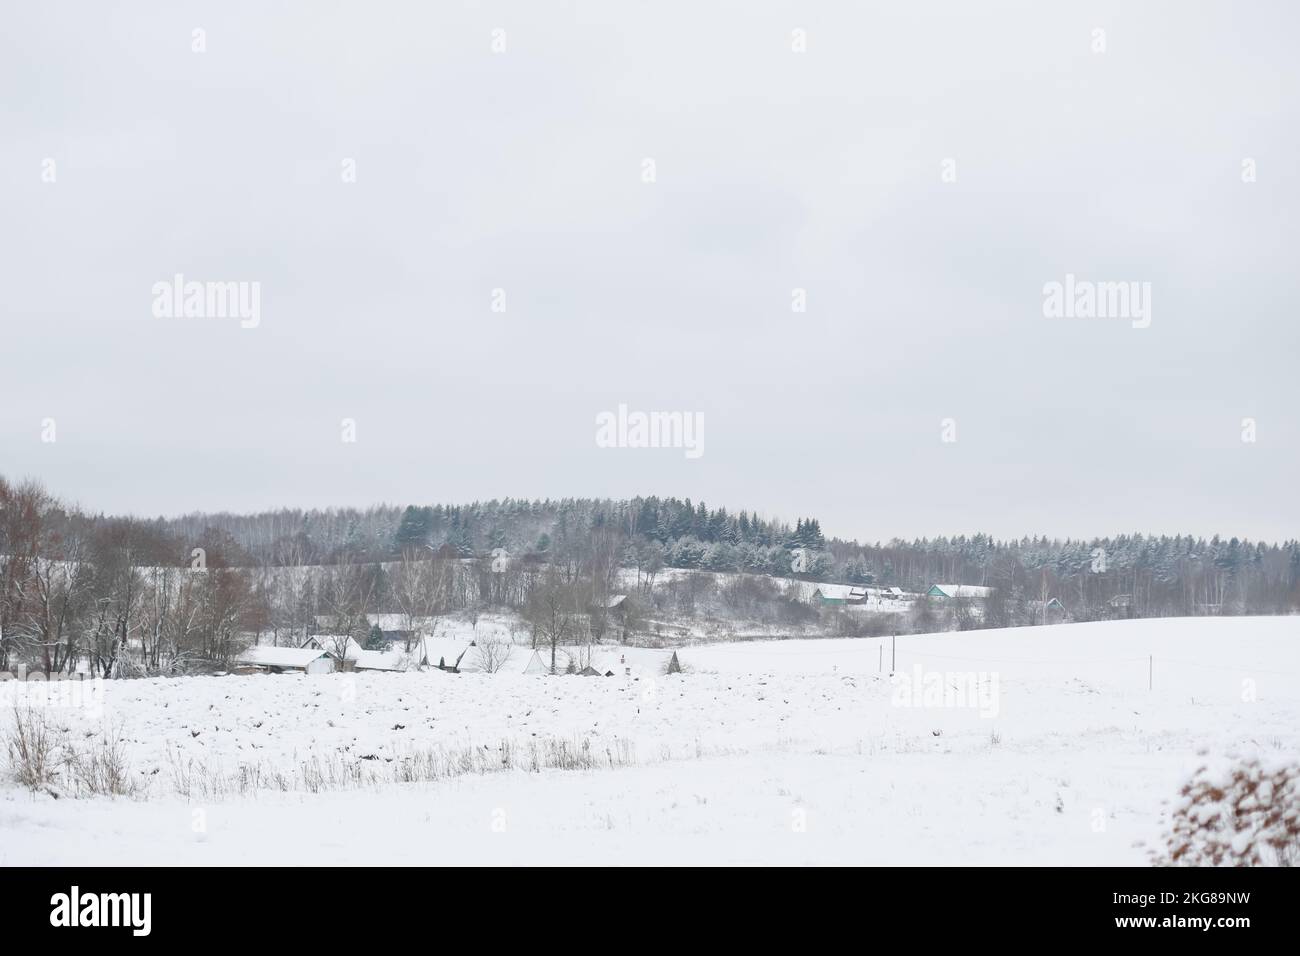 splendido paesaggio invernale in un piccolo villaggio con case, alberi ricoperti di neve Foto Stock